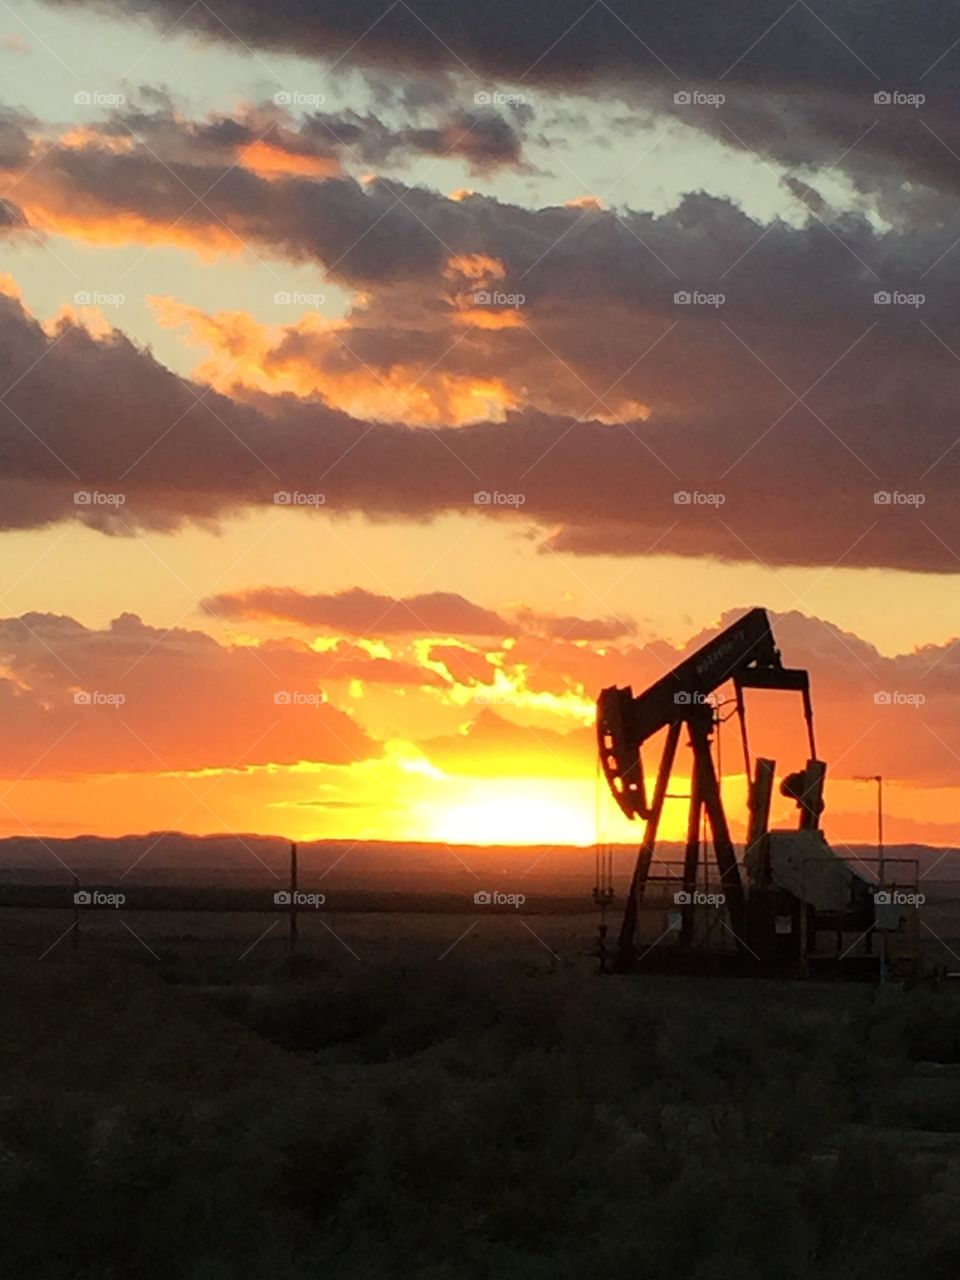 Oilfield Sunset